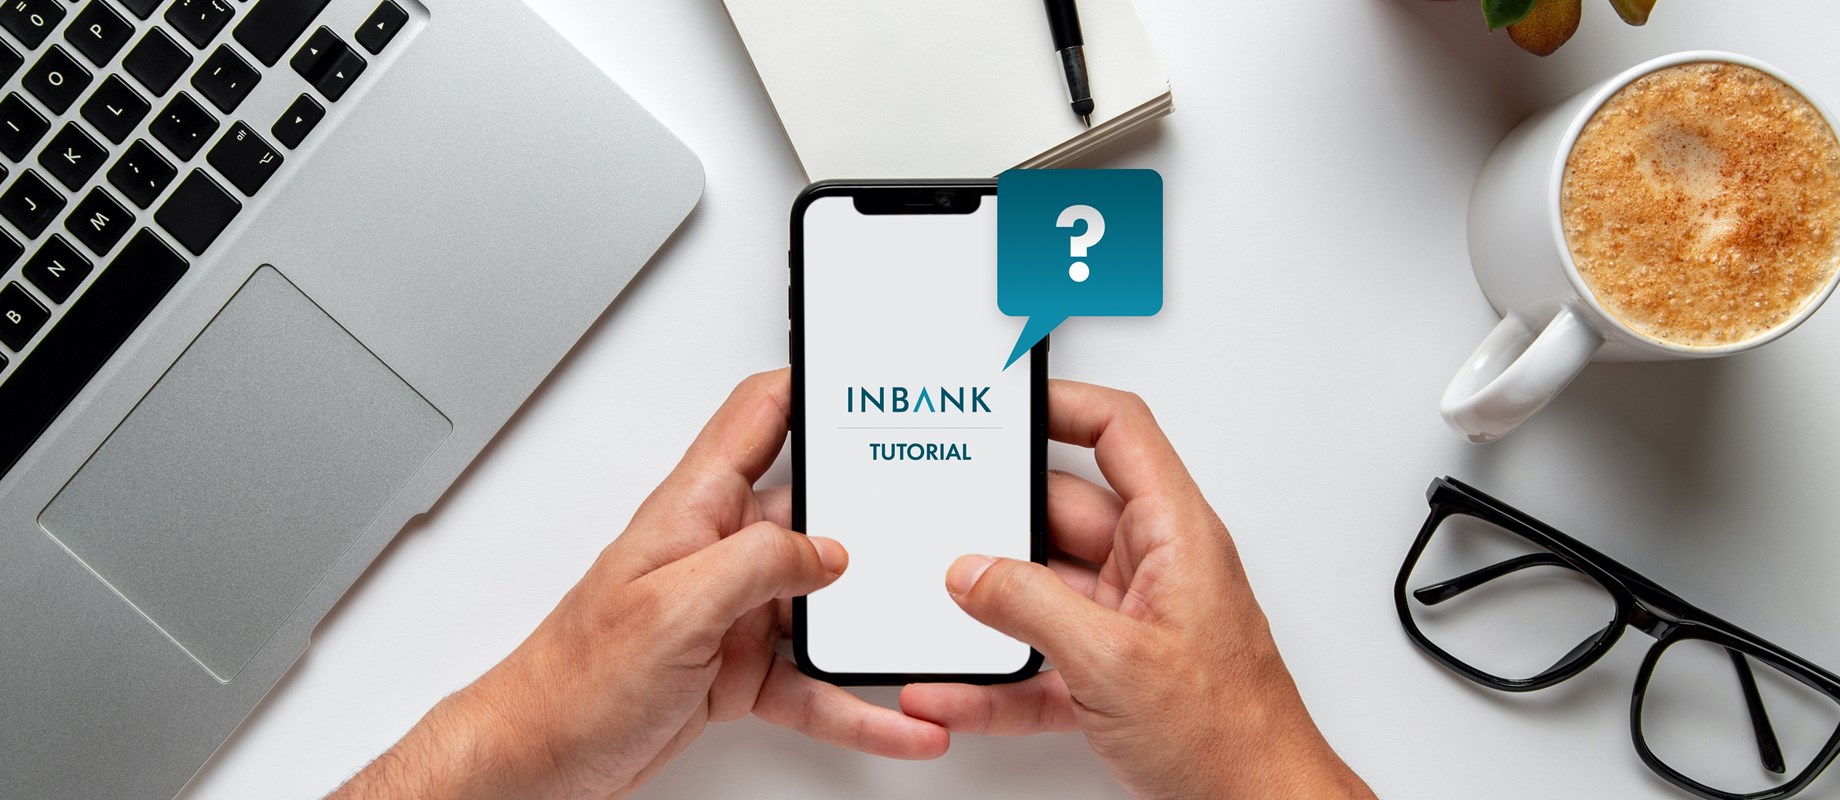 Impara a usare Inbank con semplicità 